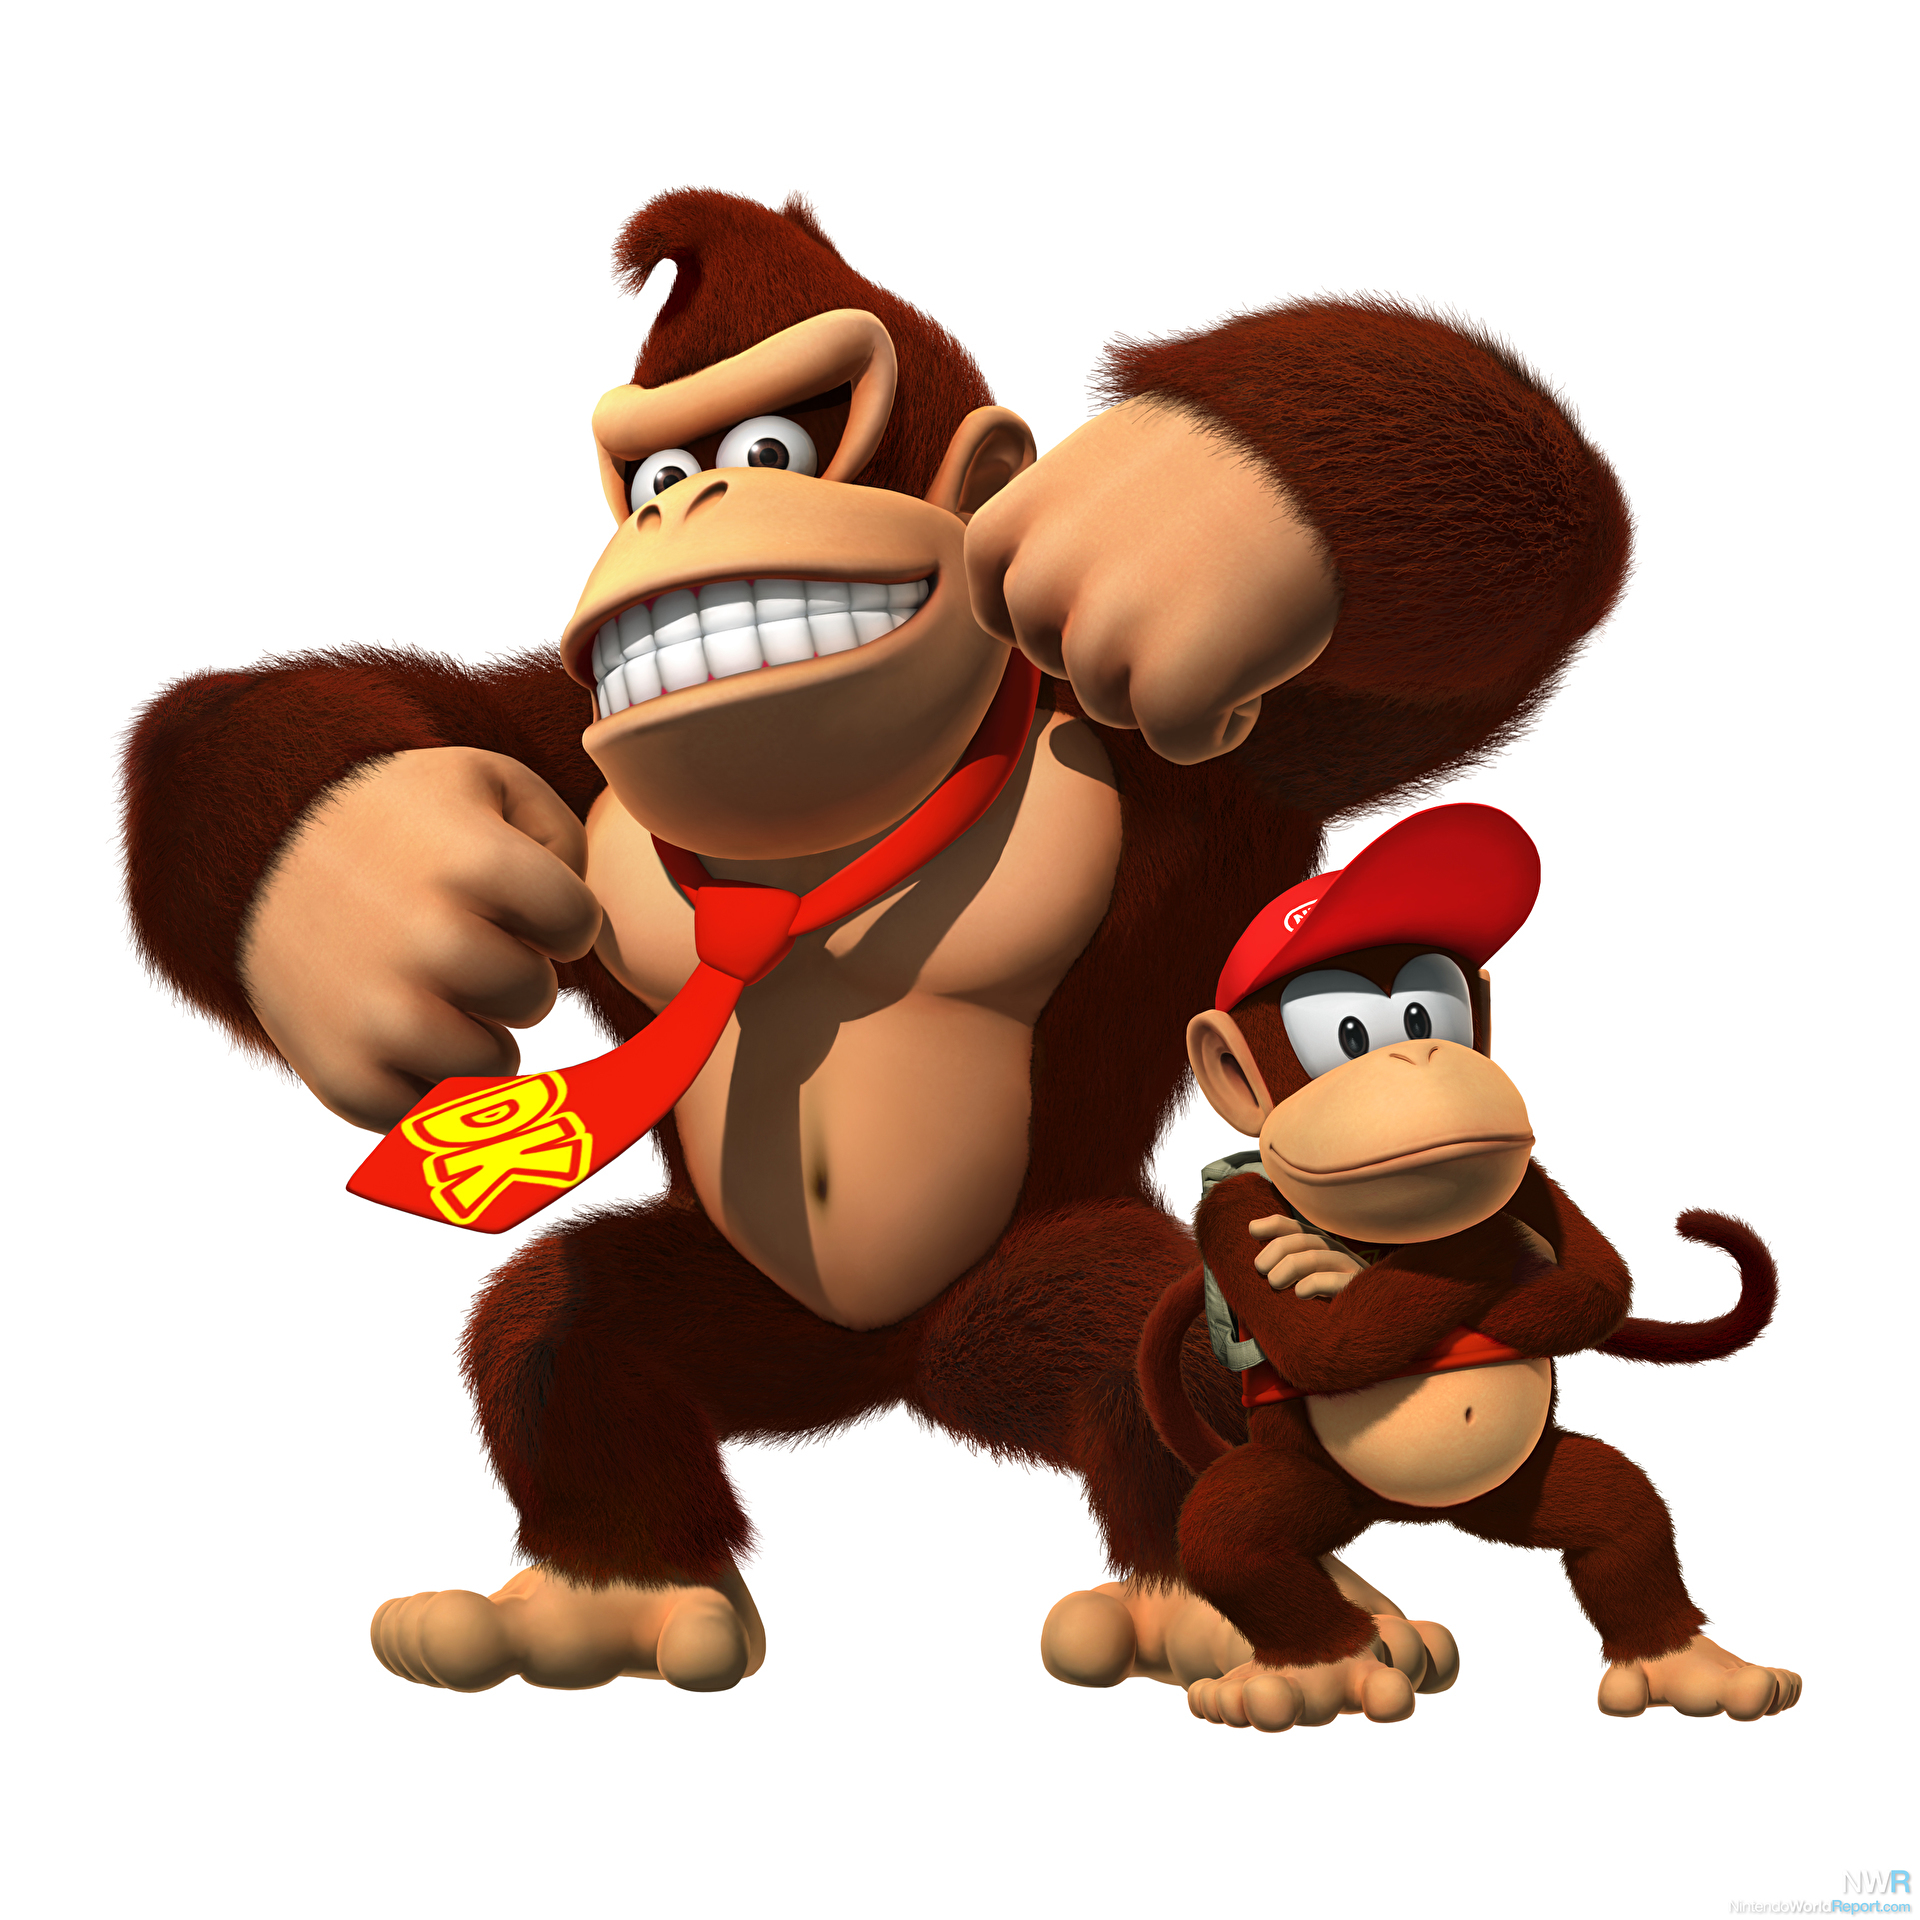 Mario vs. Donkey Kong free demo available